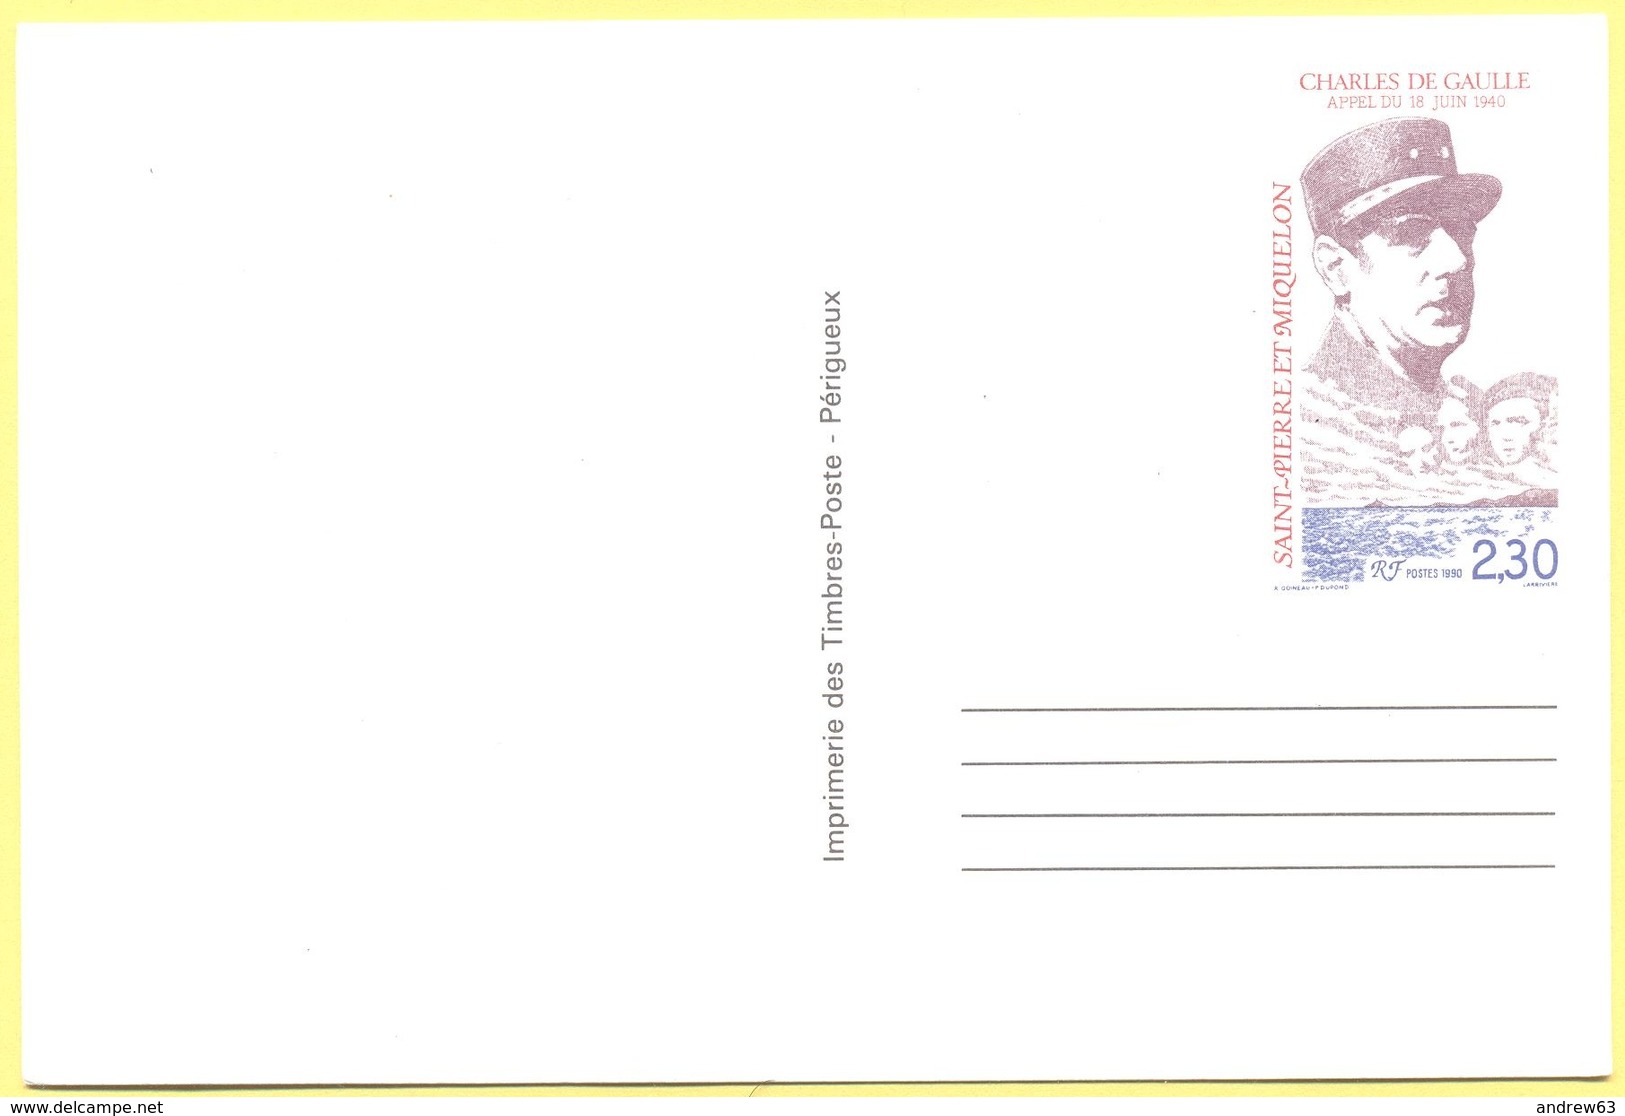 St.Pierre & Miquelon - 2,30 Charles De Gaulle - Carte Postale - Intero Postale - Entier Postal - Postal Stationery - Not - Entiers Postaux